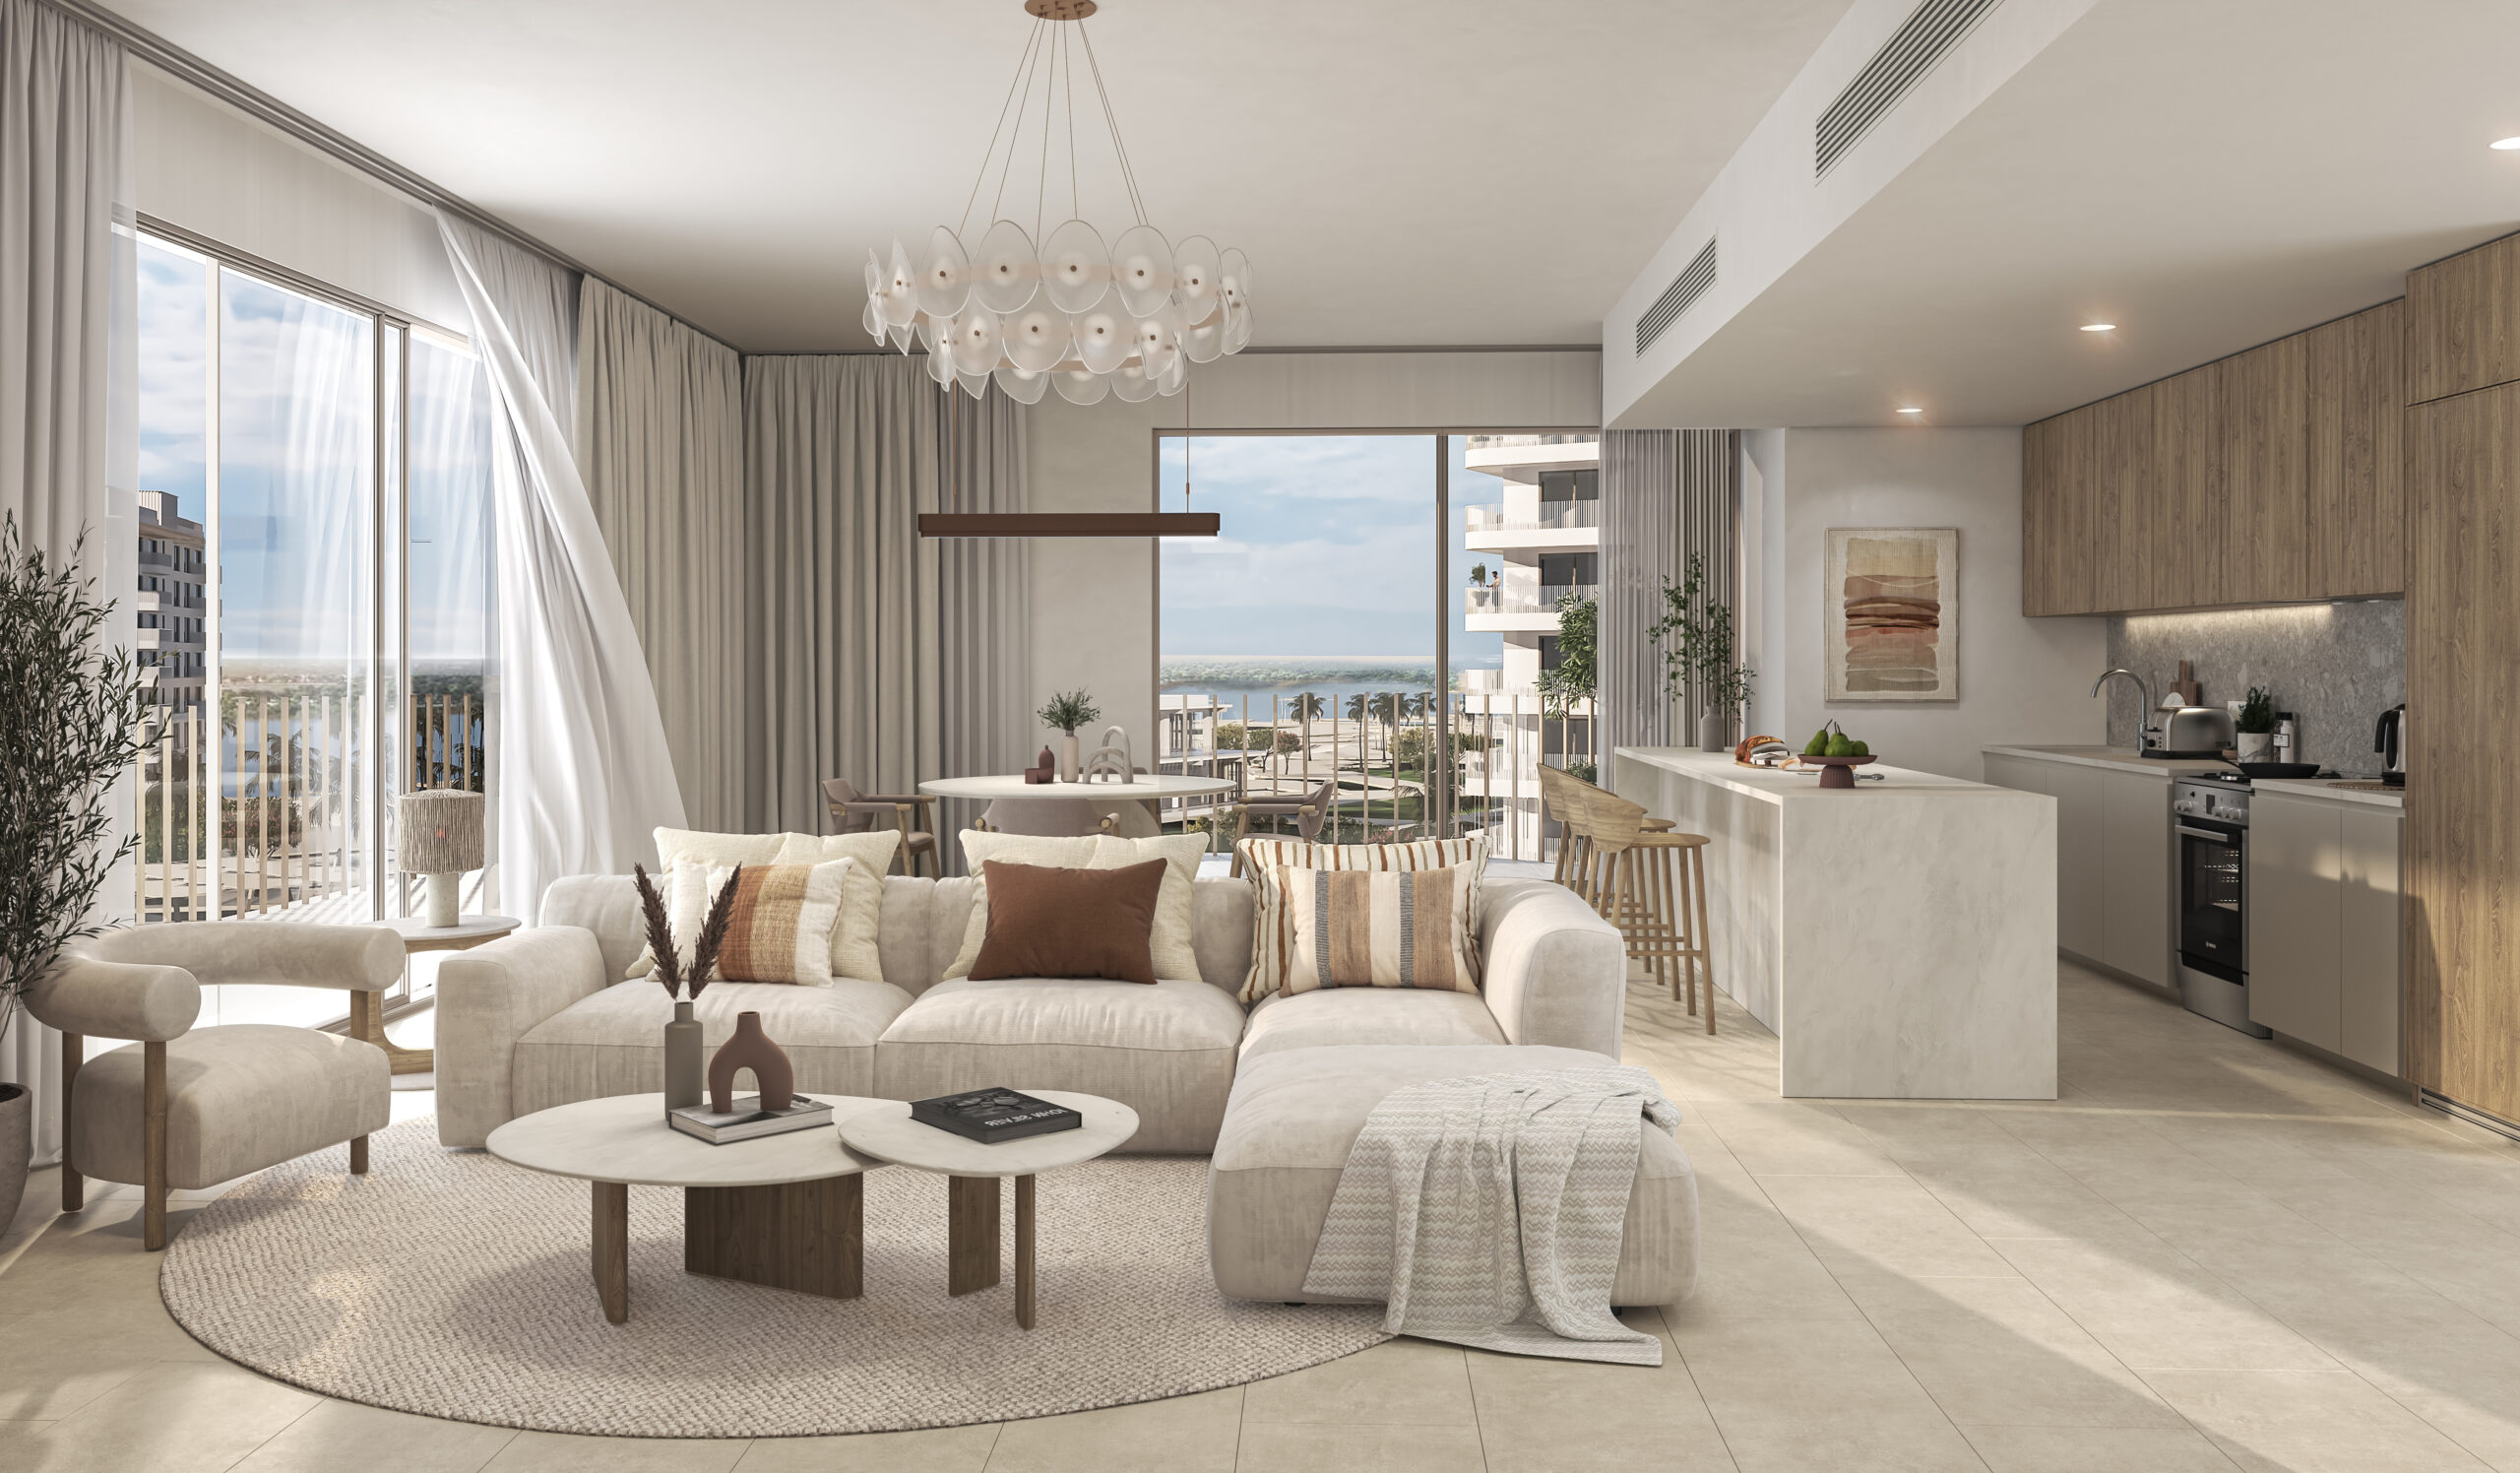 Gardenia Bay - Aldar - Apartments for Rent -Studio - 1 - 2 - Bedrooms